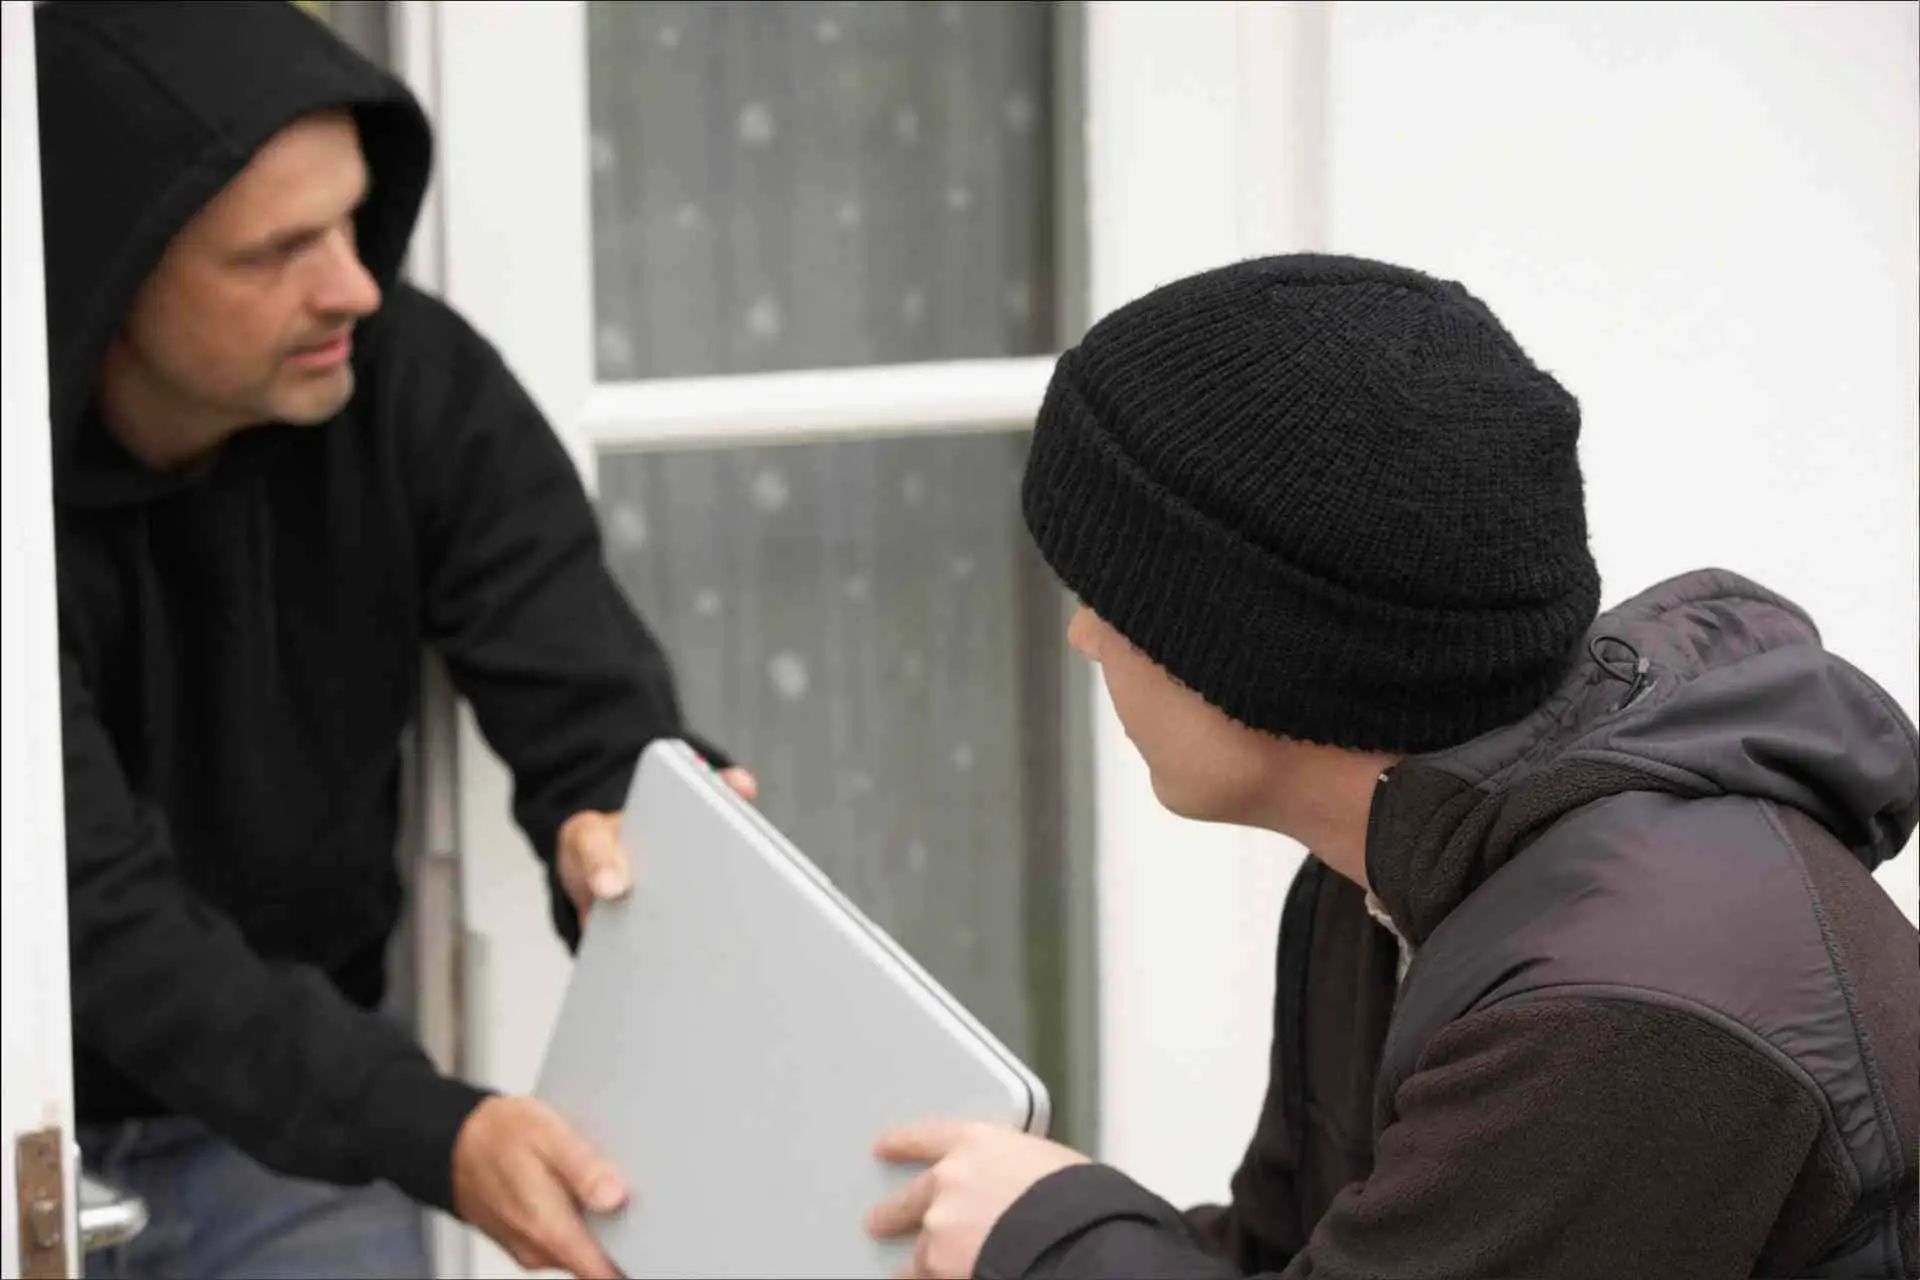 men stealing laptop